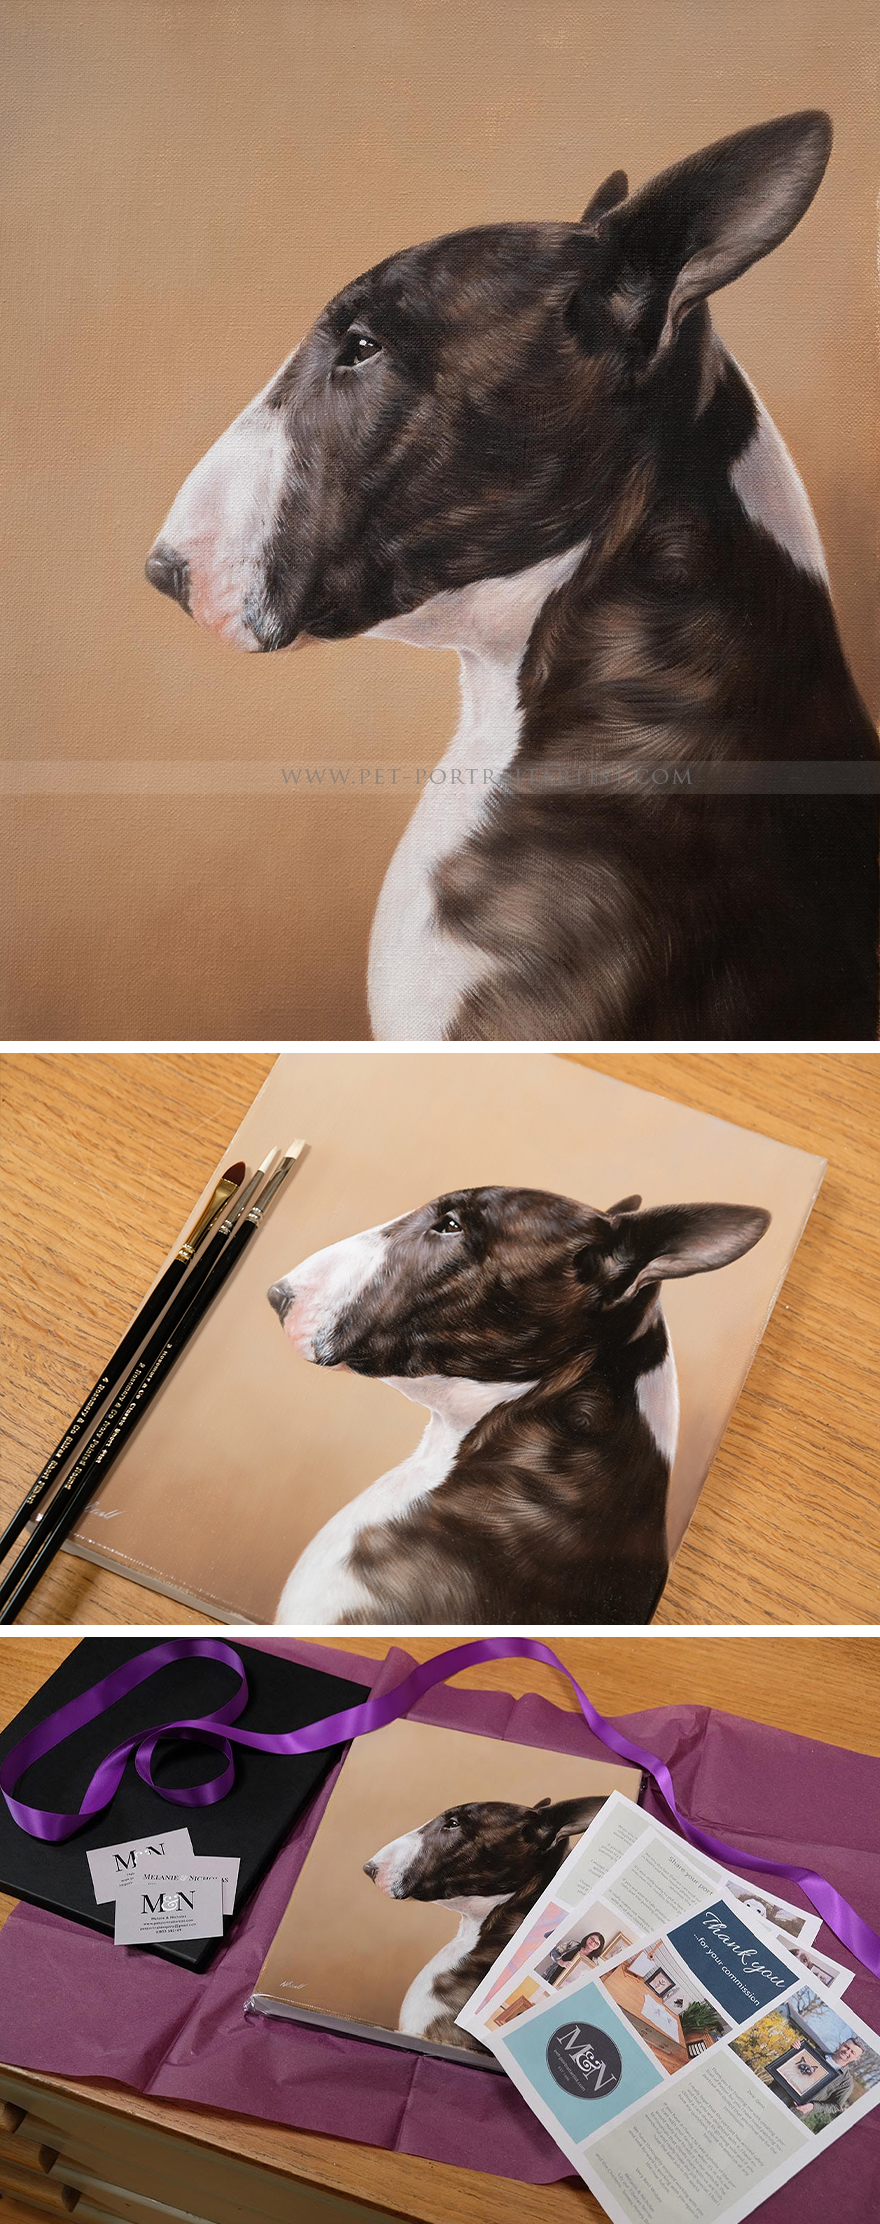 Latest Pet Portraits